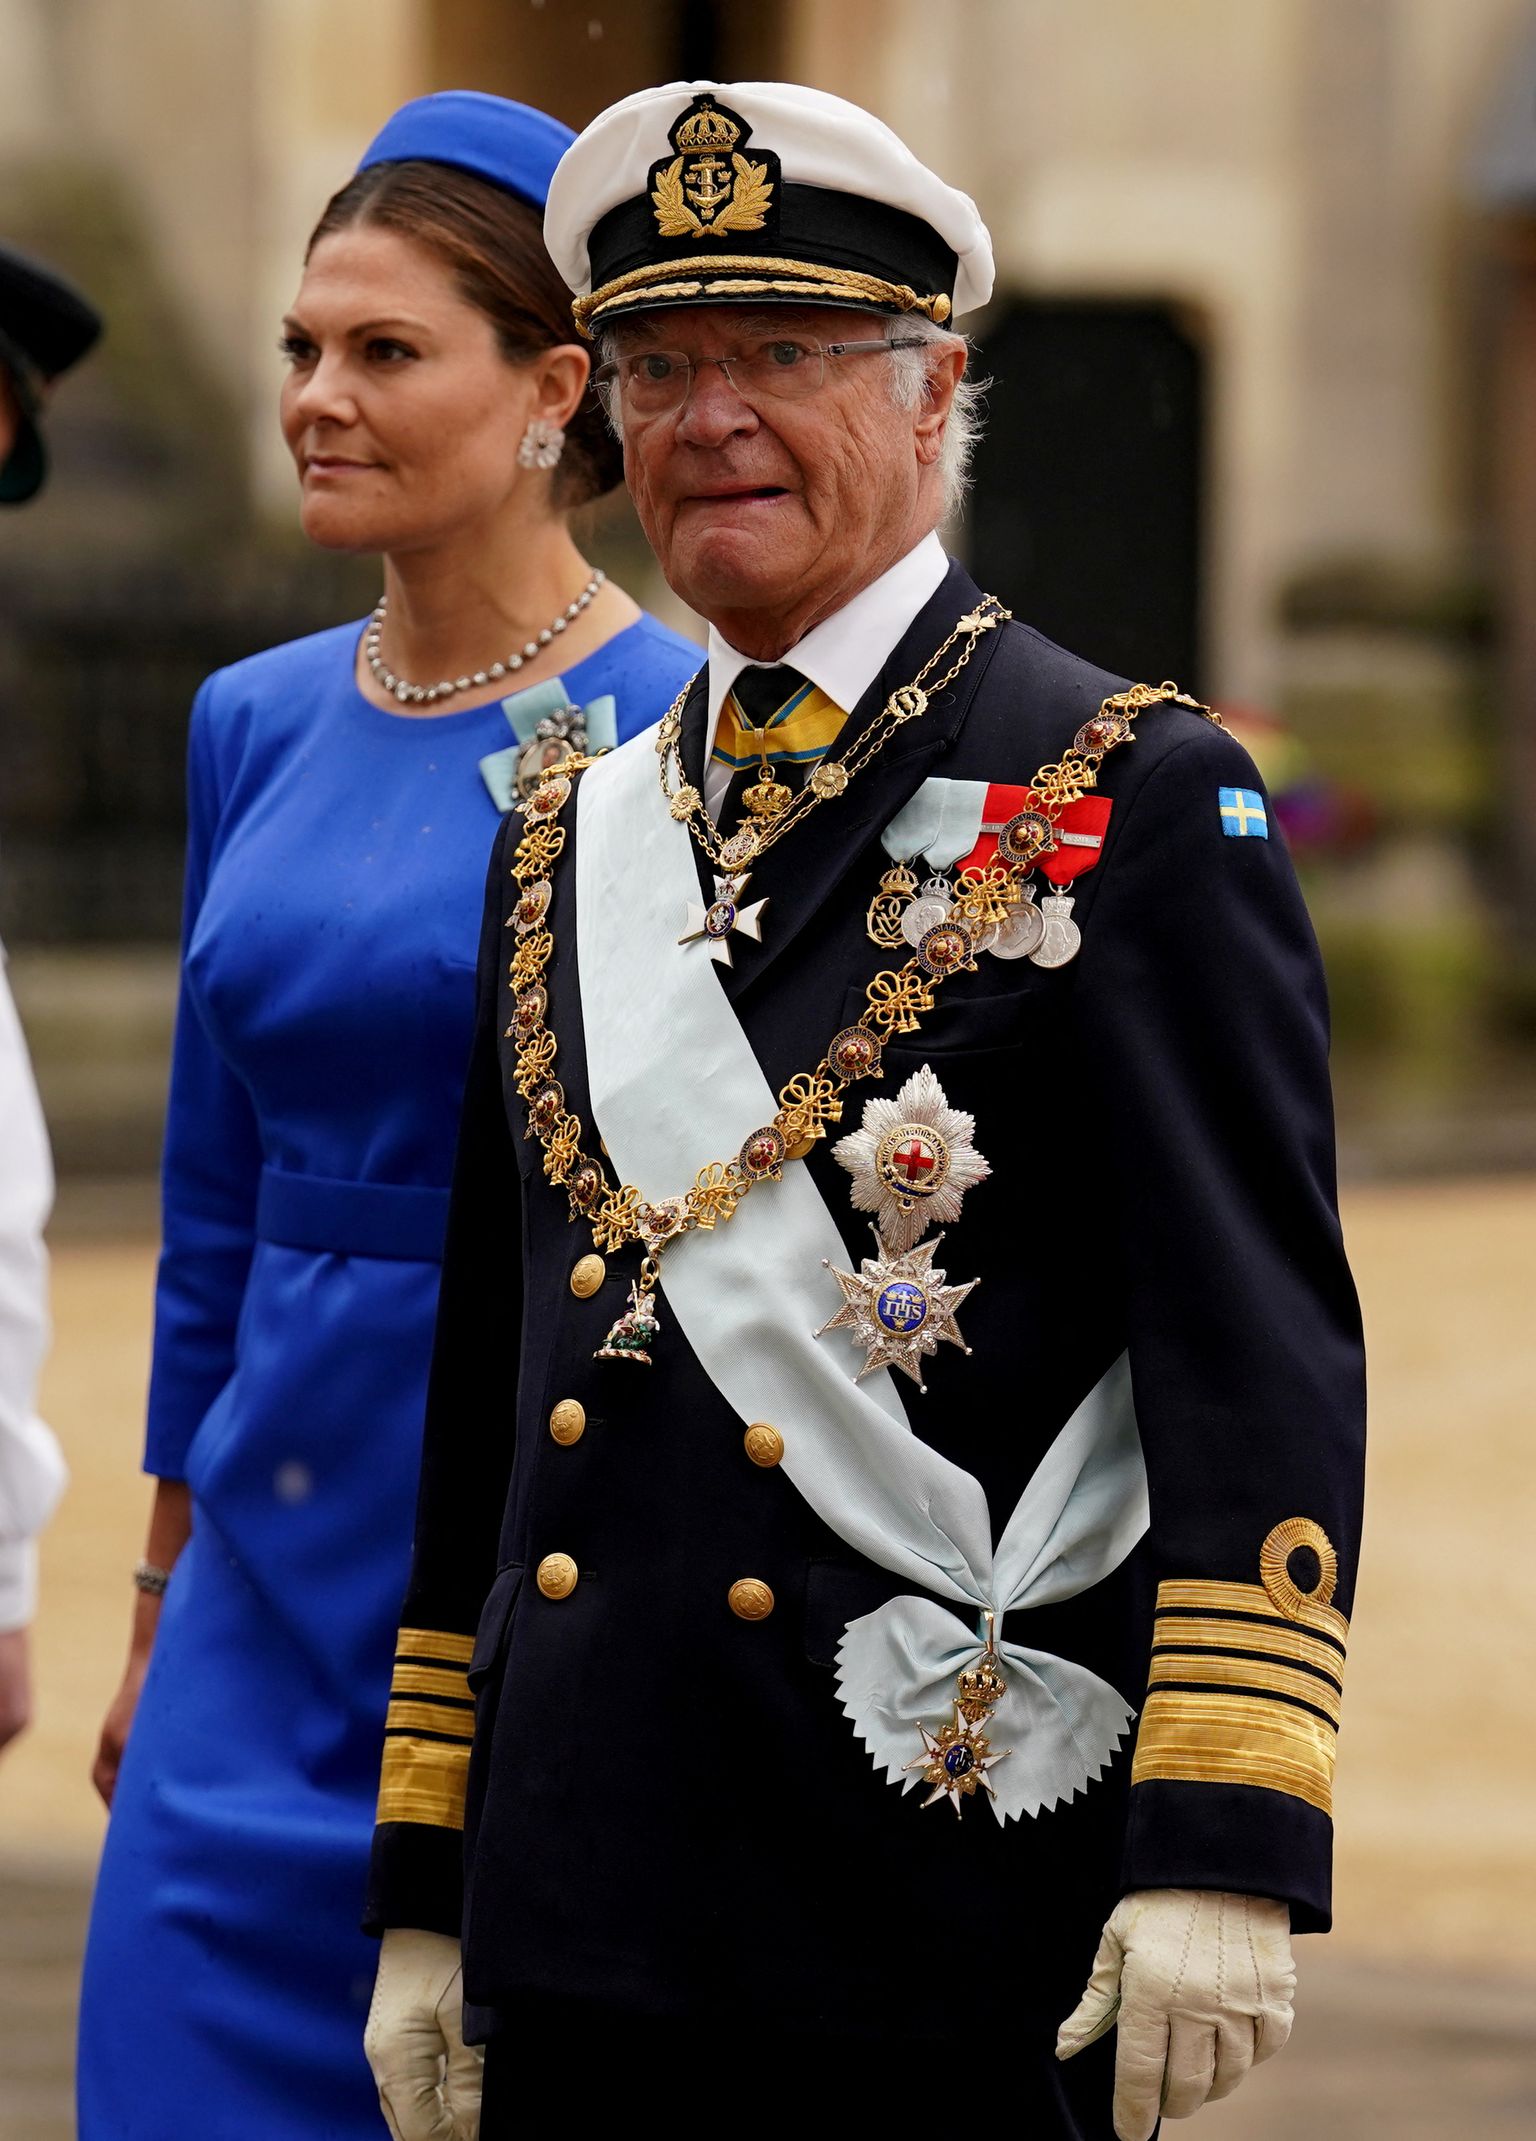 Rootsi kuningas Carl XVI Gustaf koos kroonprintsess Victoriaga 6. mail 2023 Suurbritannias Londonis suundumas Westminster Abbeysse Briti kuninga Charles III kroonimistseremooniale